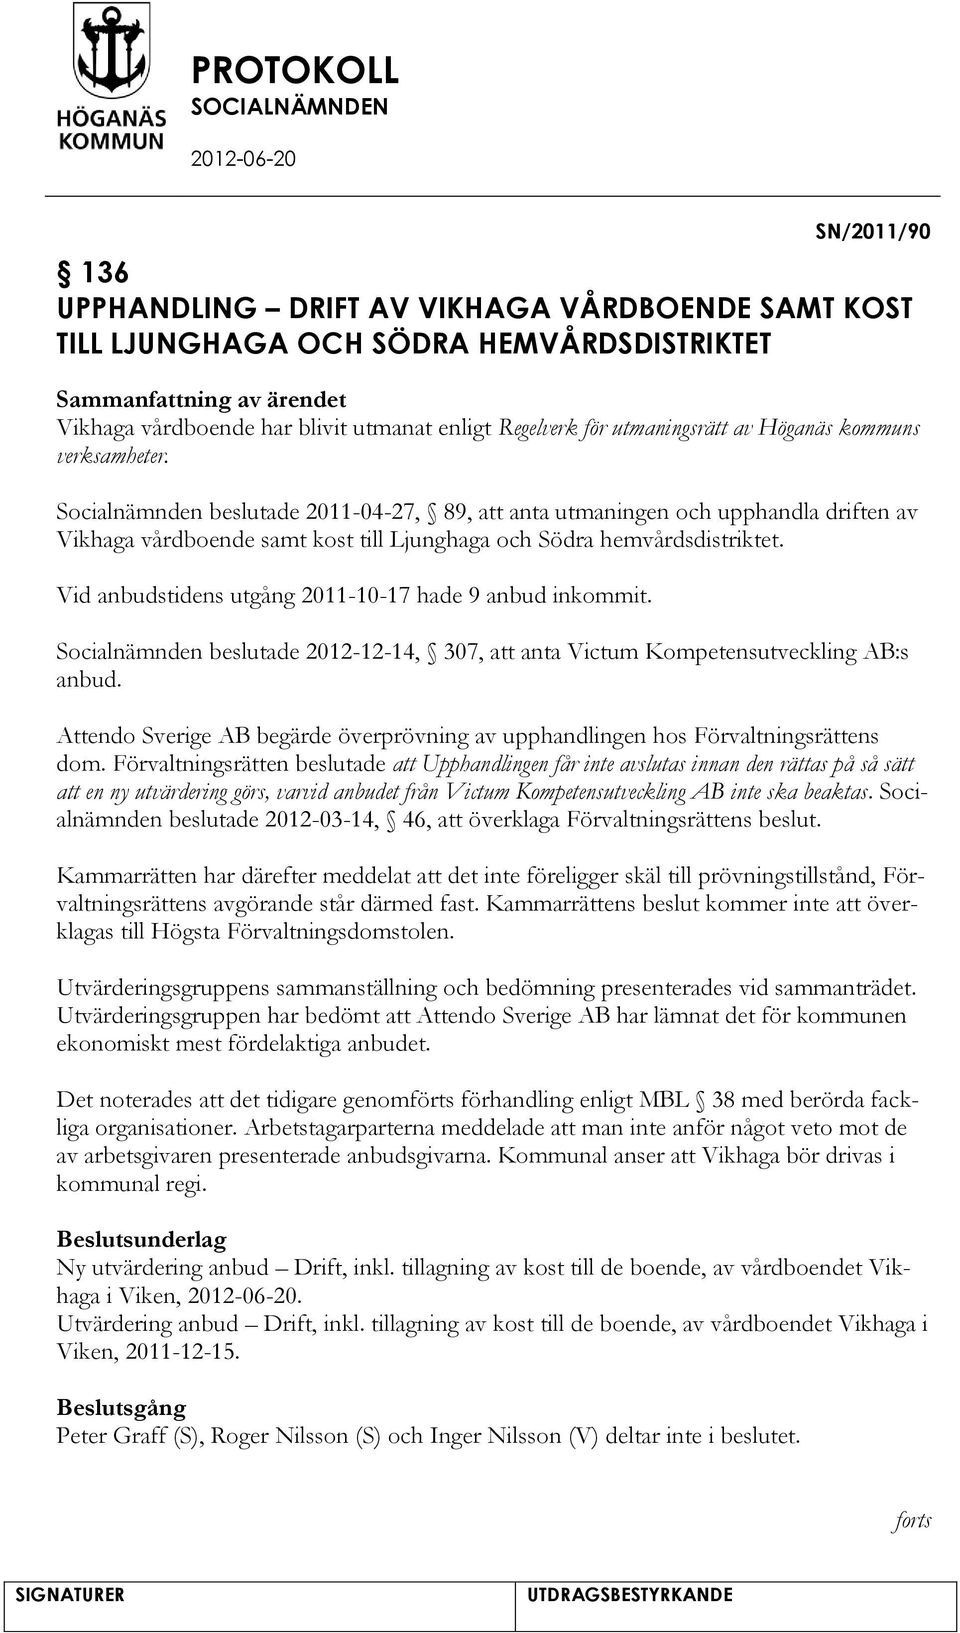 Socialnämnden beslutade 2011-04-27, 89, anta utmaningen och upphandla driften av Vikhaga vårdboende samt kost till Ljunghaga och Södra hemvårdsdistriktet.